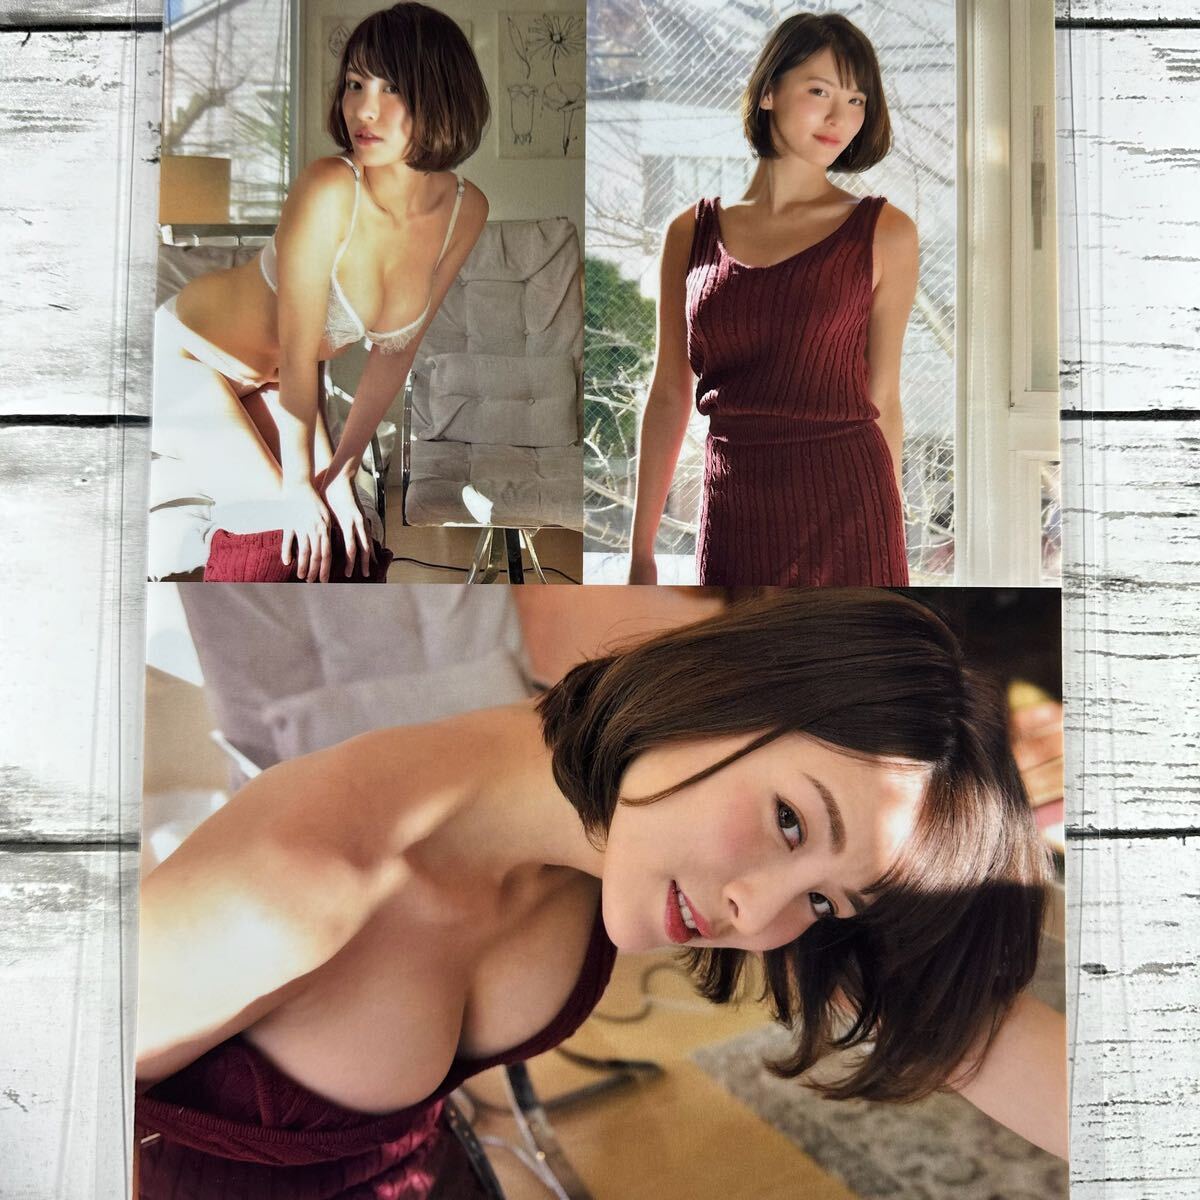 [ высокое качество ламинирование отделка ][. месяц Senna ] журнал вырезки 6P A4 плёнка купальный костюм bikini model актер женщина super 